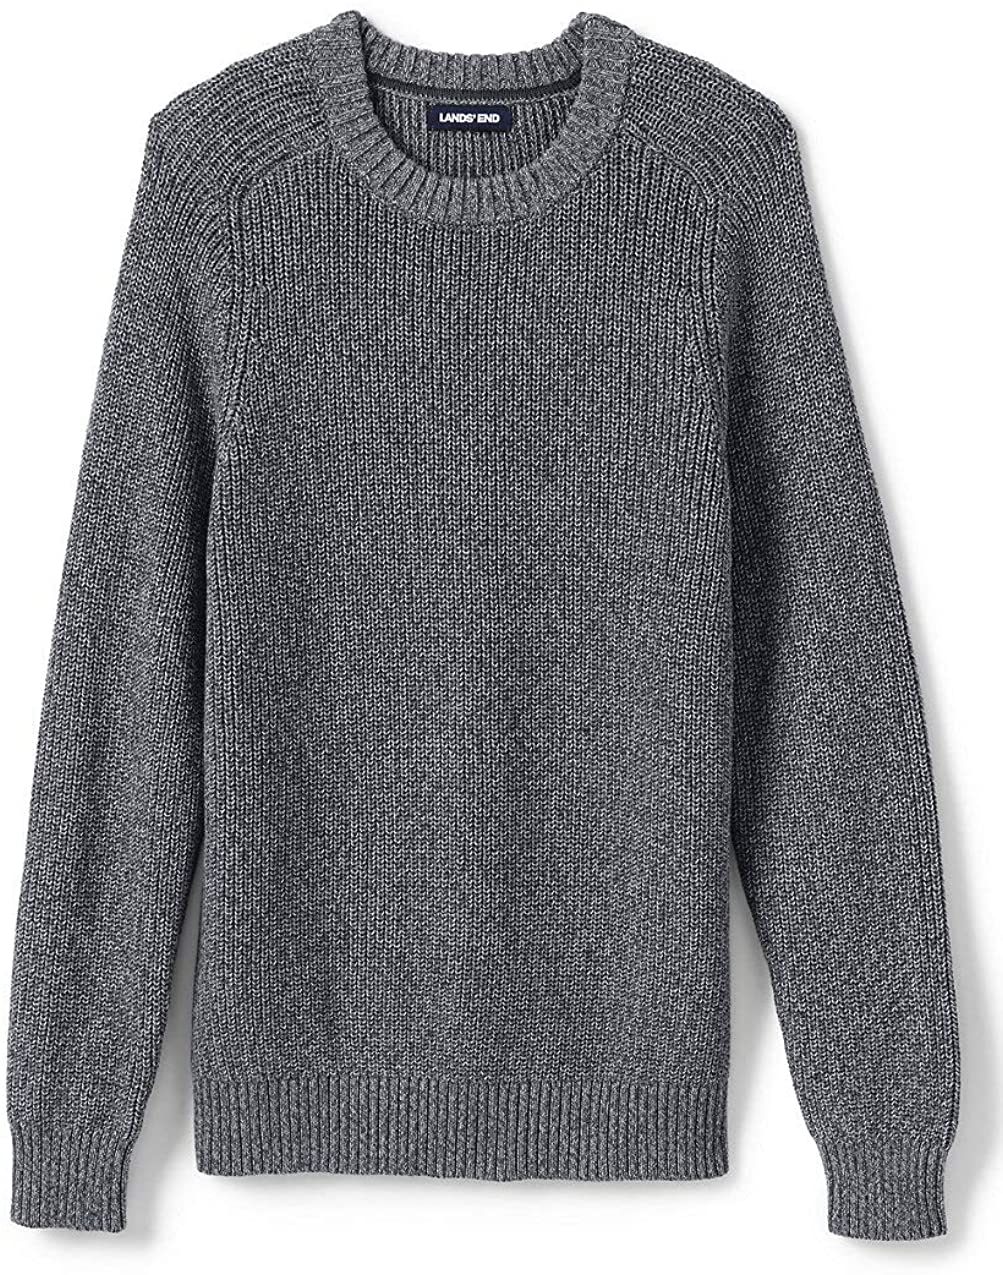 Lands' End Men's Drifter Cotton Crewneck Sweater | eBay